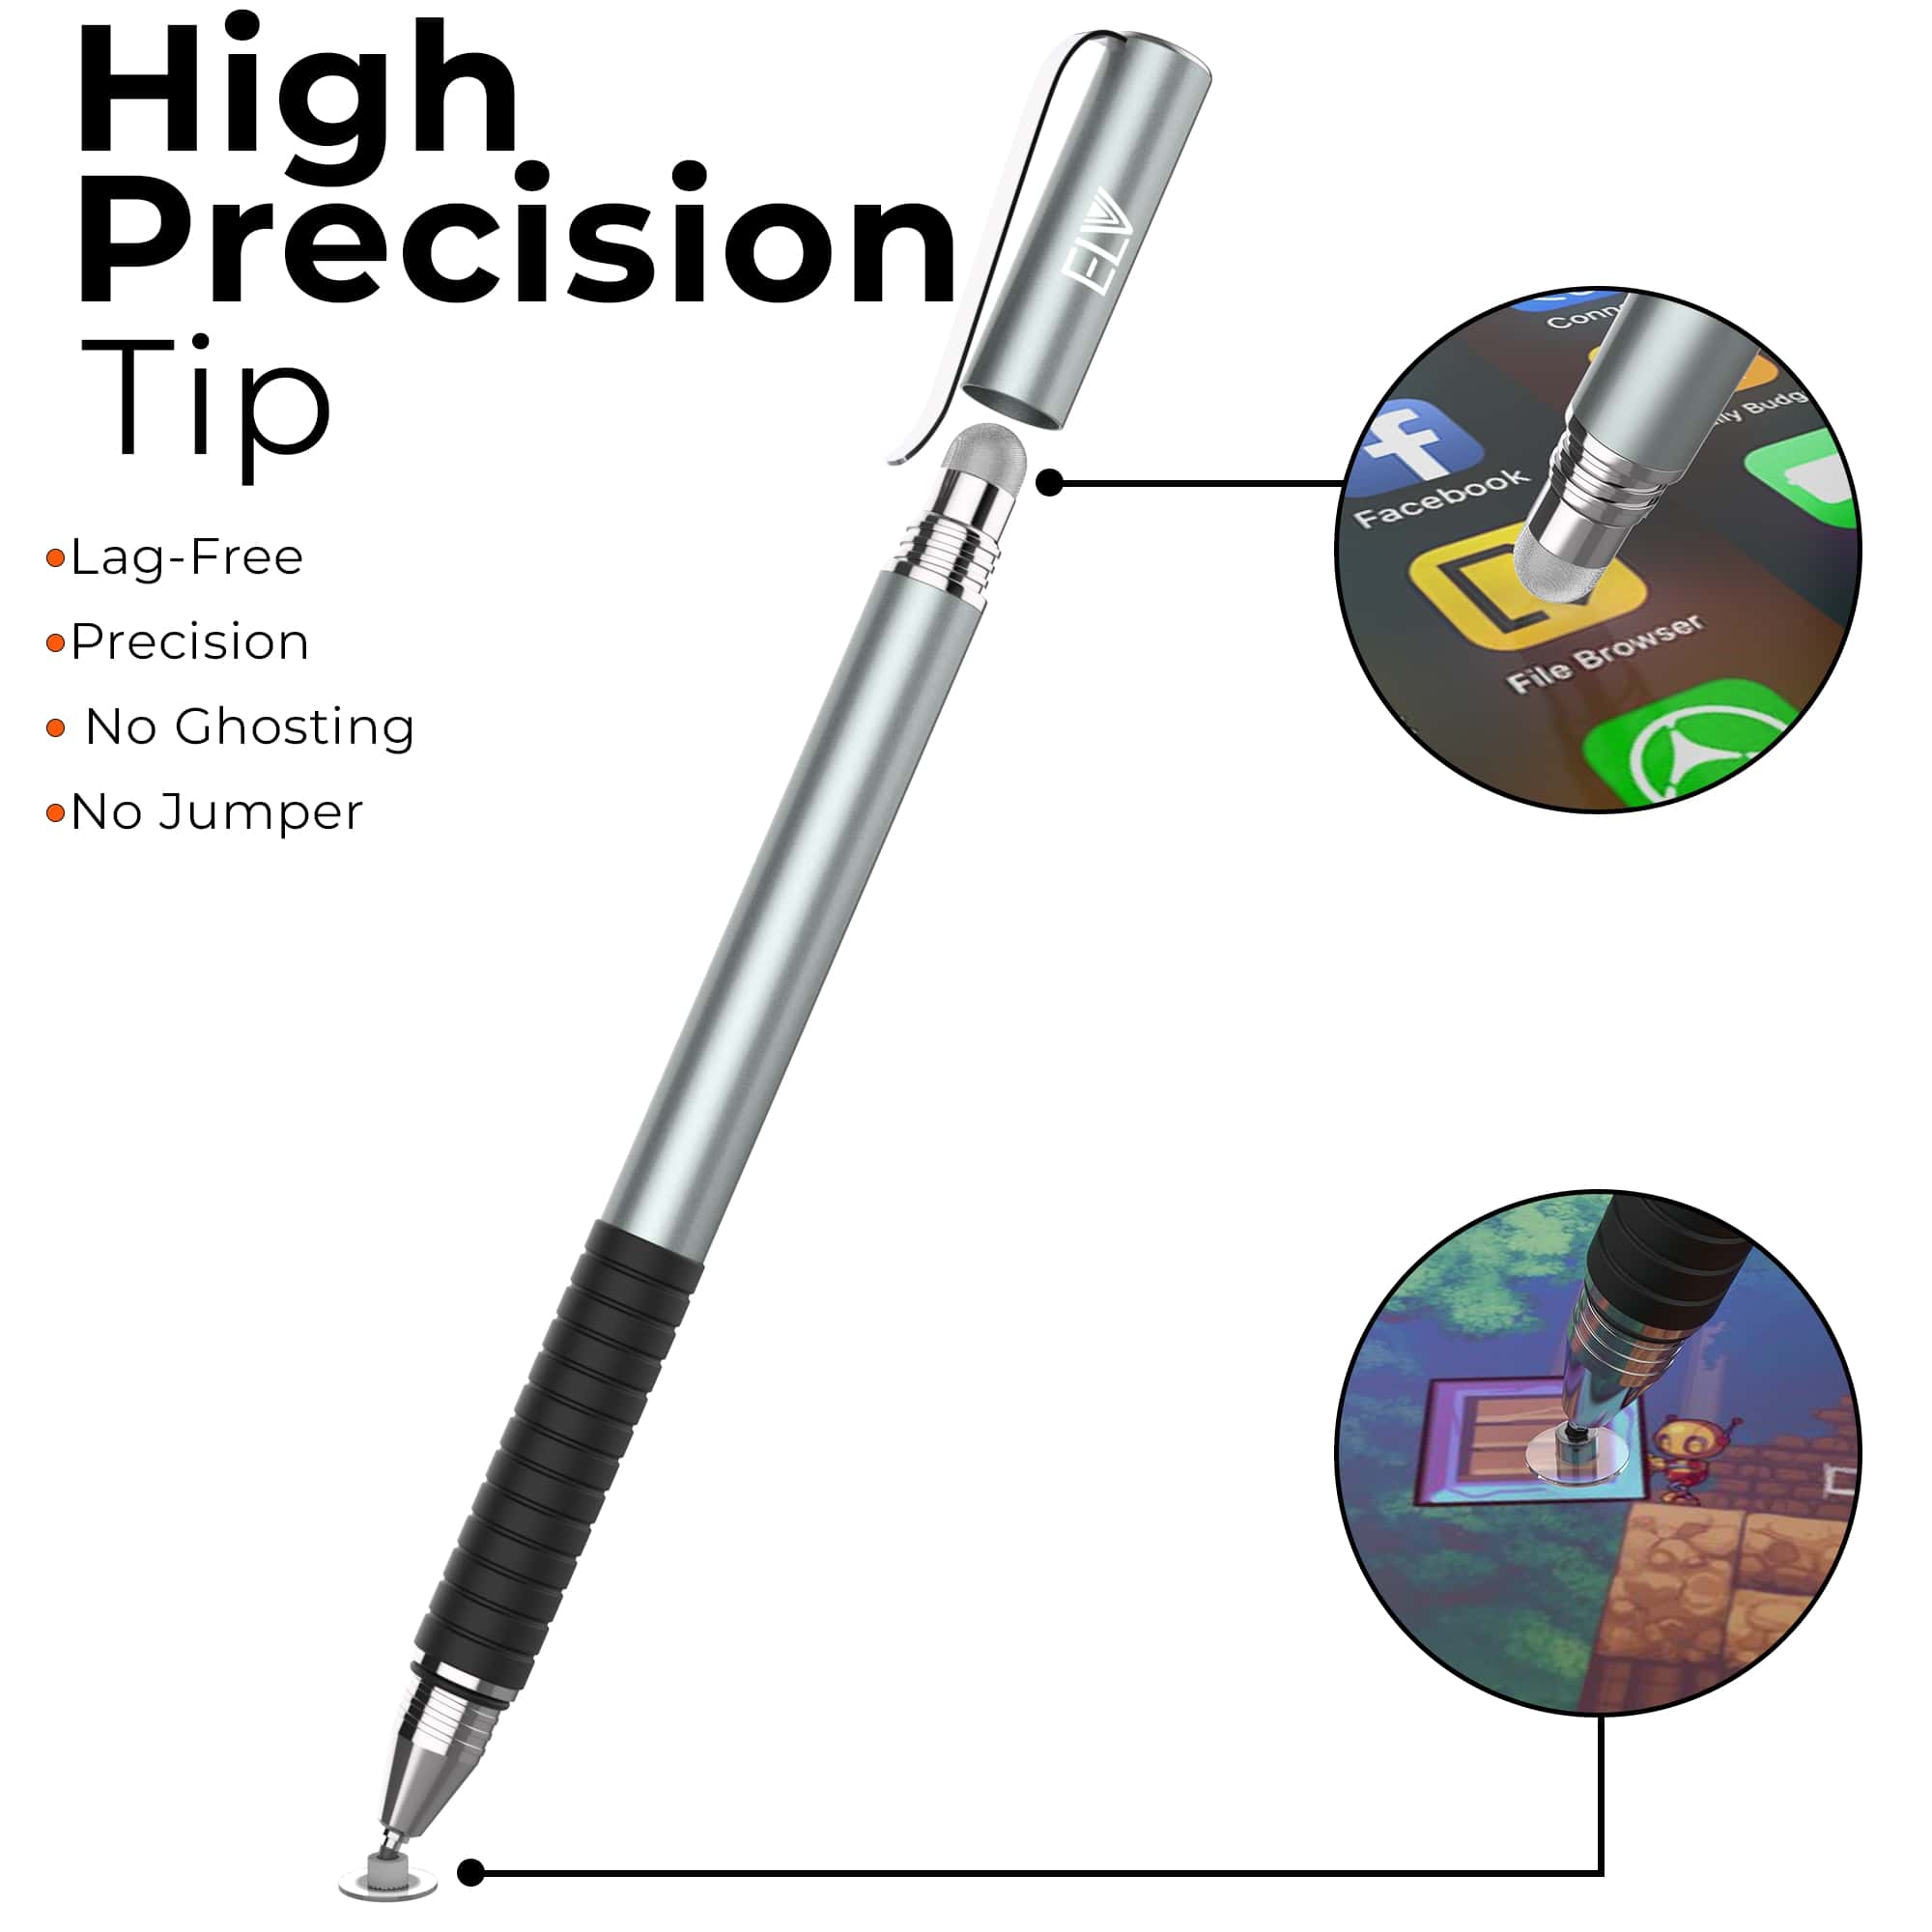 BUY 2in1 Stylus Pen, FinePoint Tip & Hybrid Fiber Tip